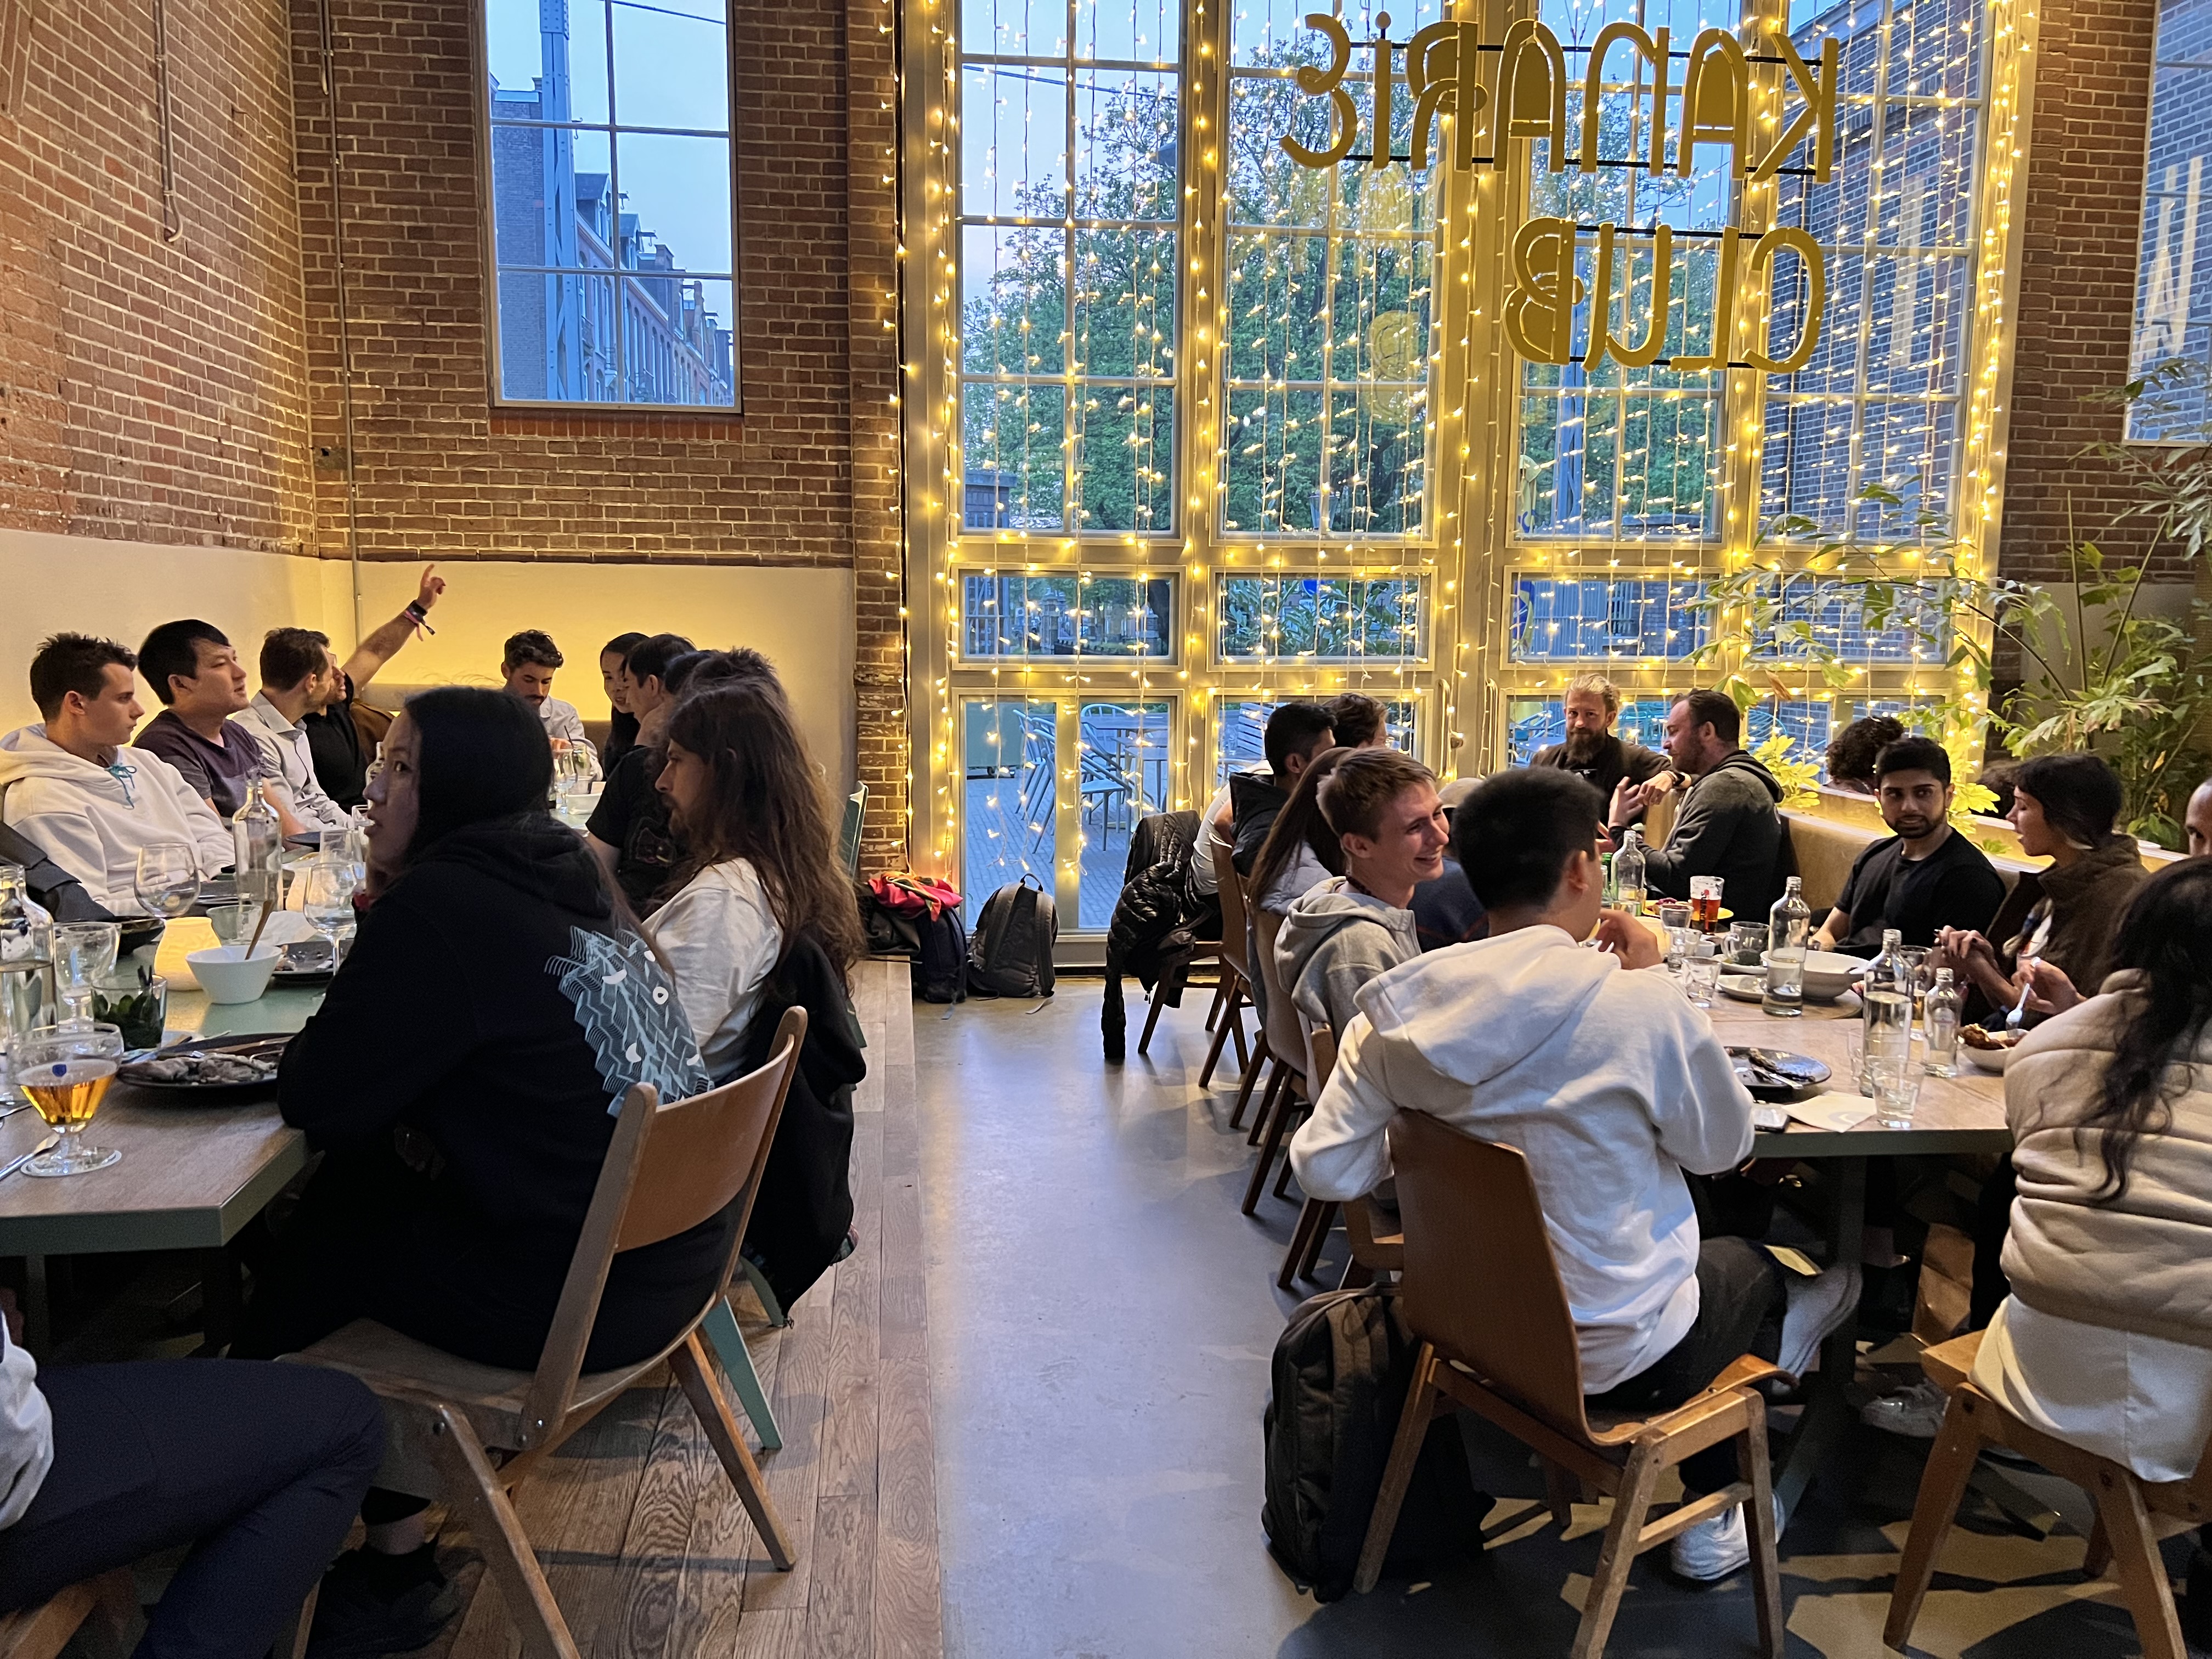 Zeitgeist & friends dinner at Devconnect in Amsterdam.